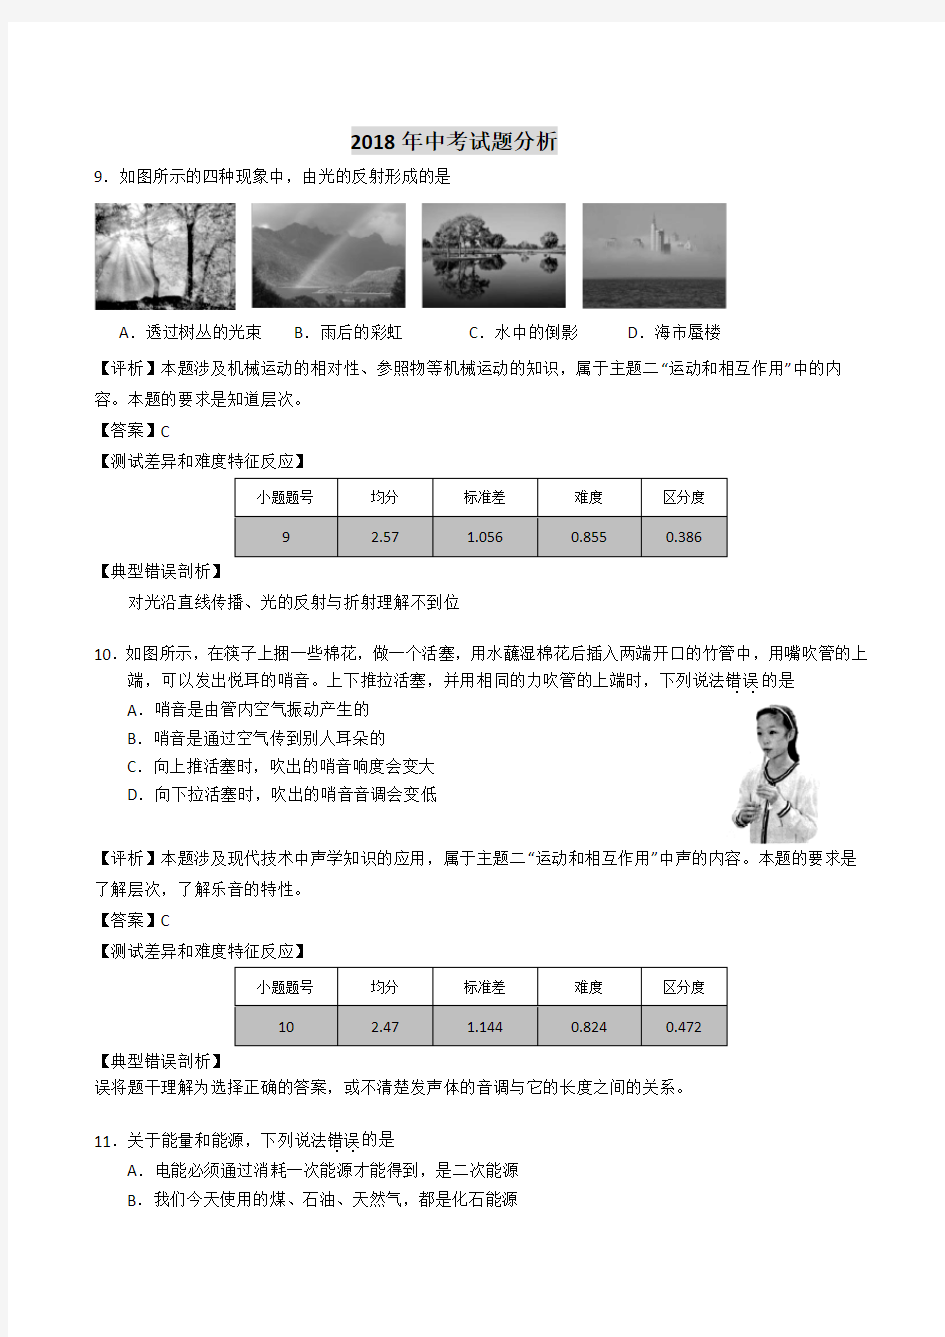 2018年武汉中考试题及分析